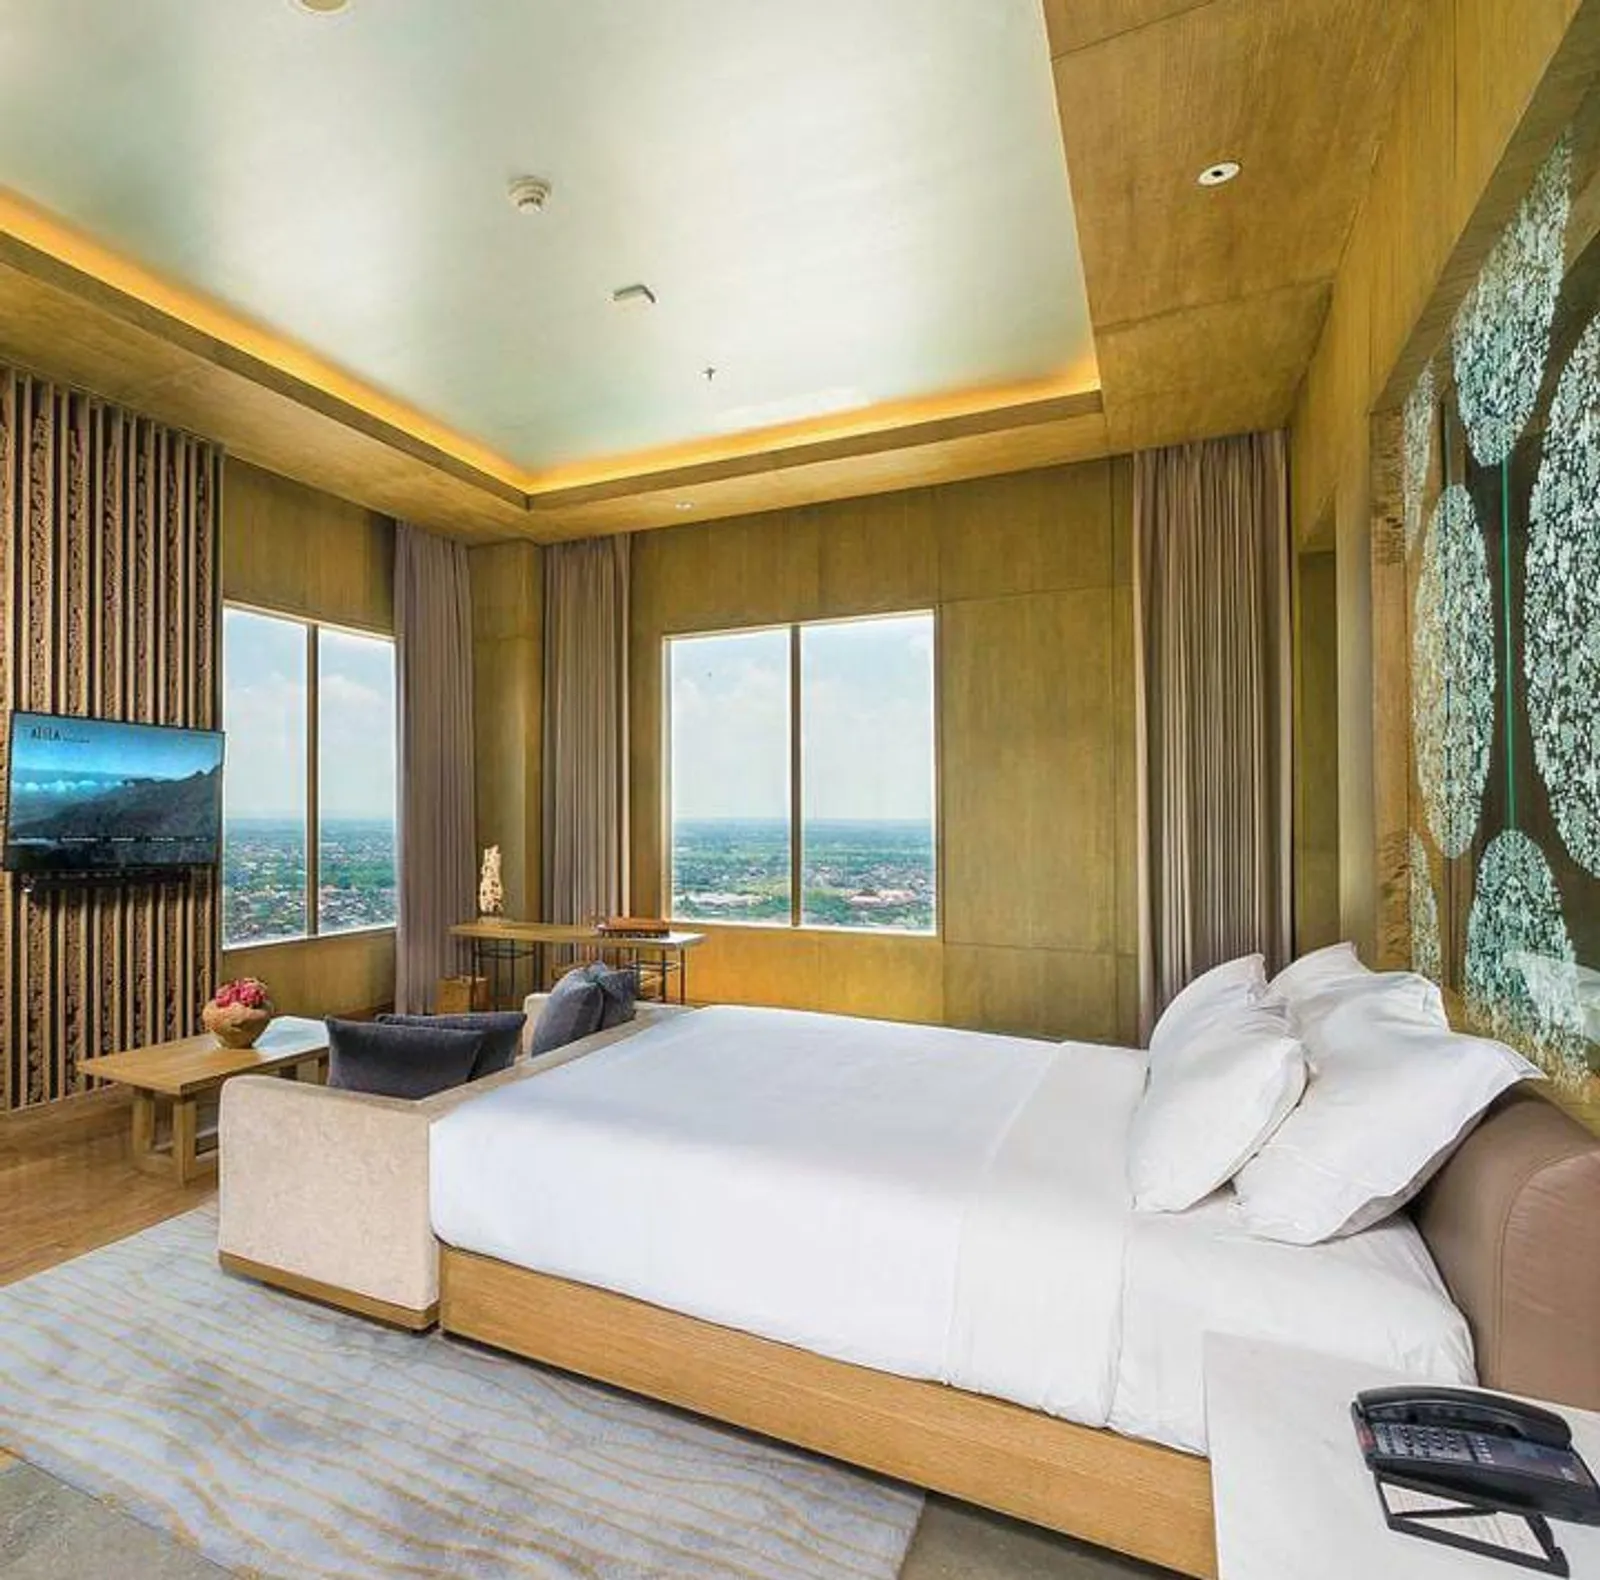 5 Rekomendasi Hotel Bintang Lima di Solo, Harga Terjangkau!